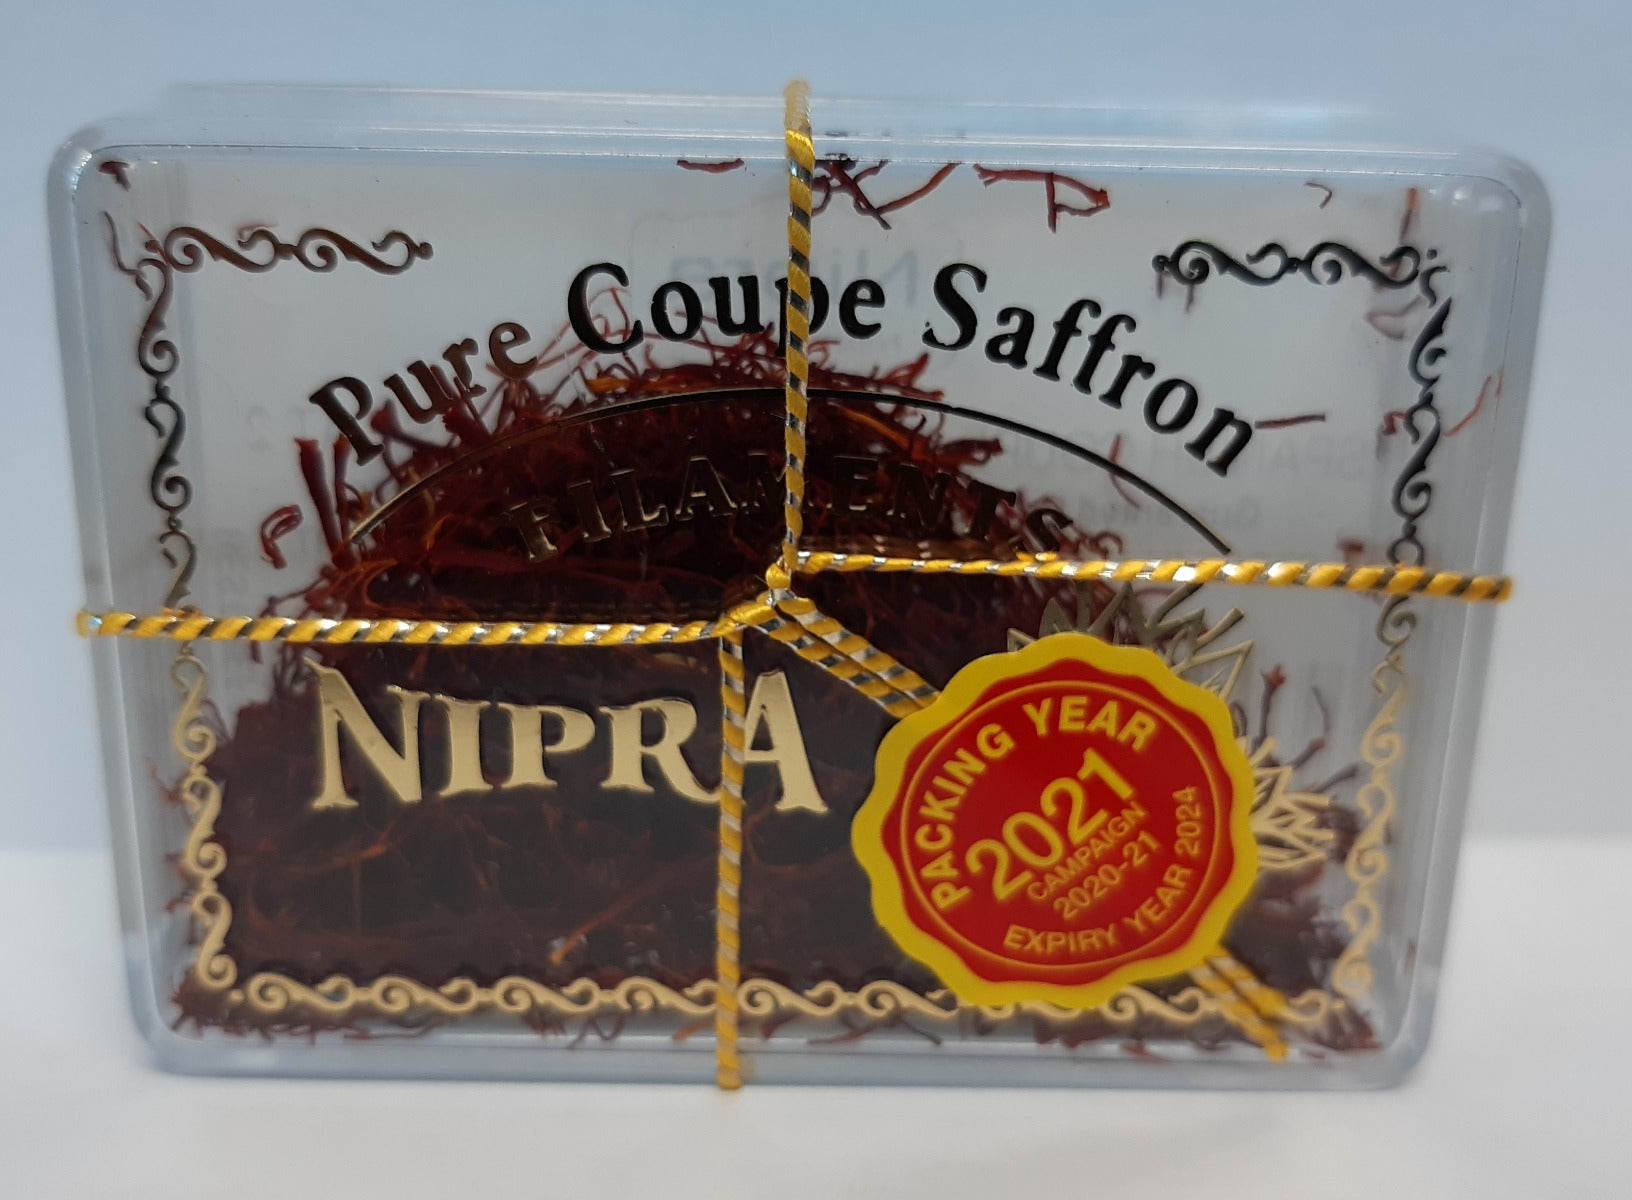 Nipra Pure Coupe Spanish Saffron 2G